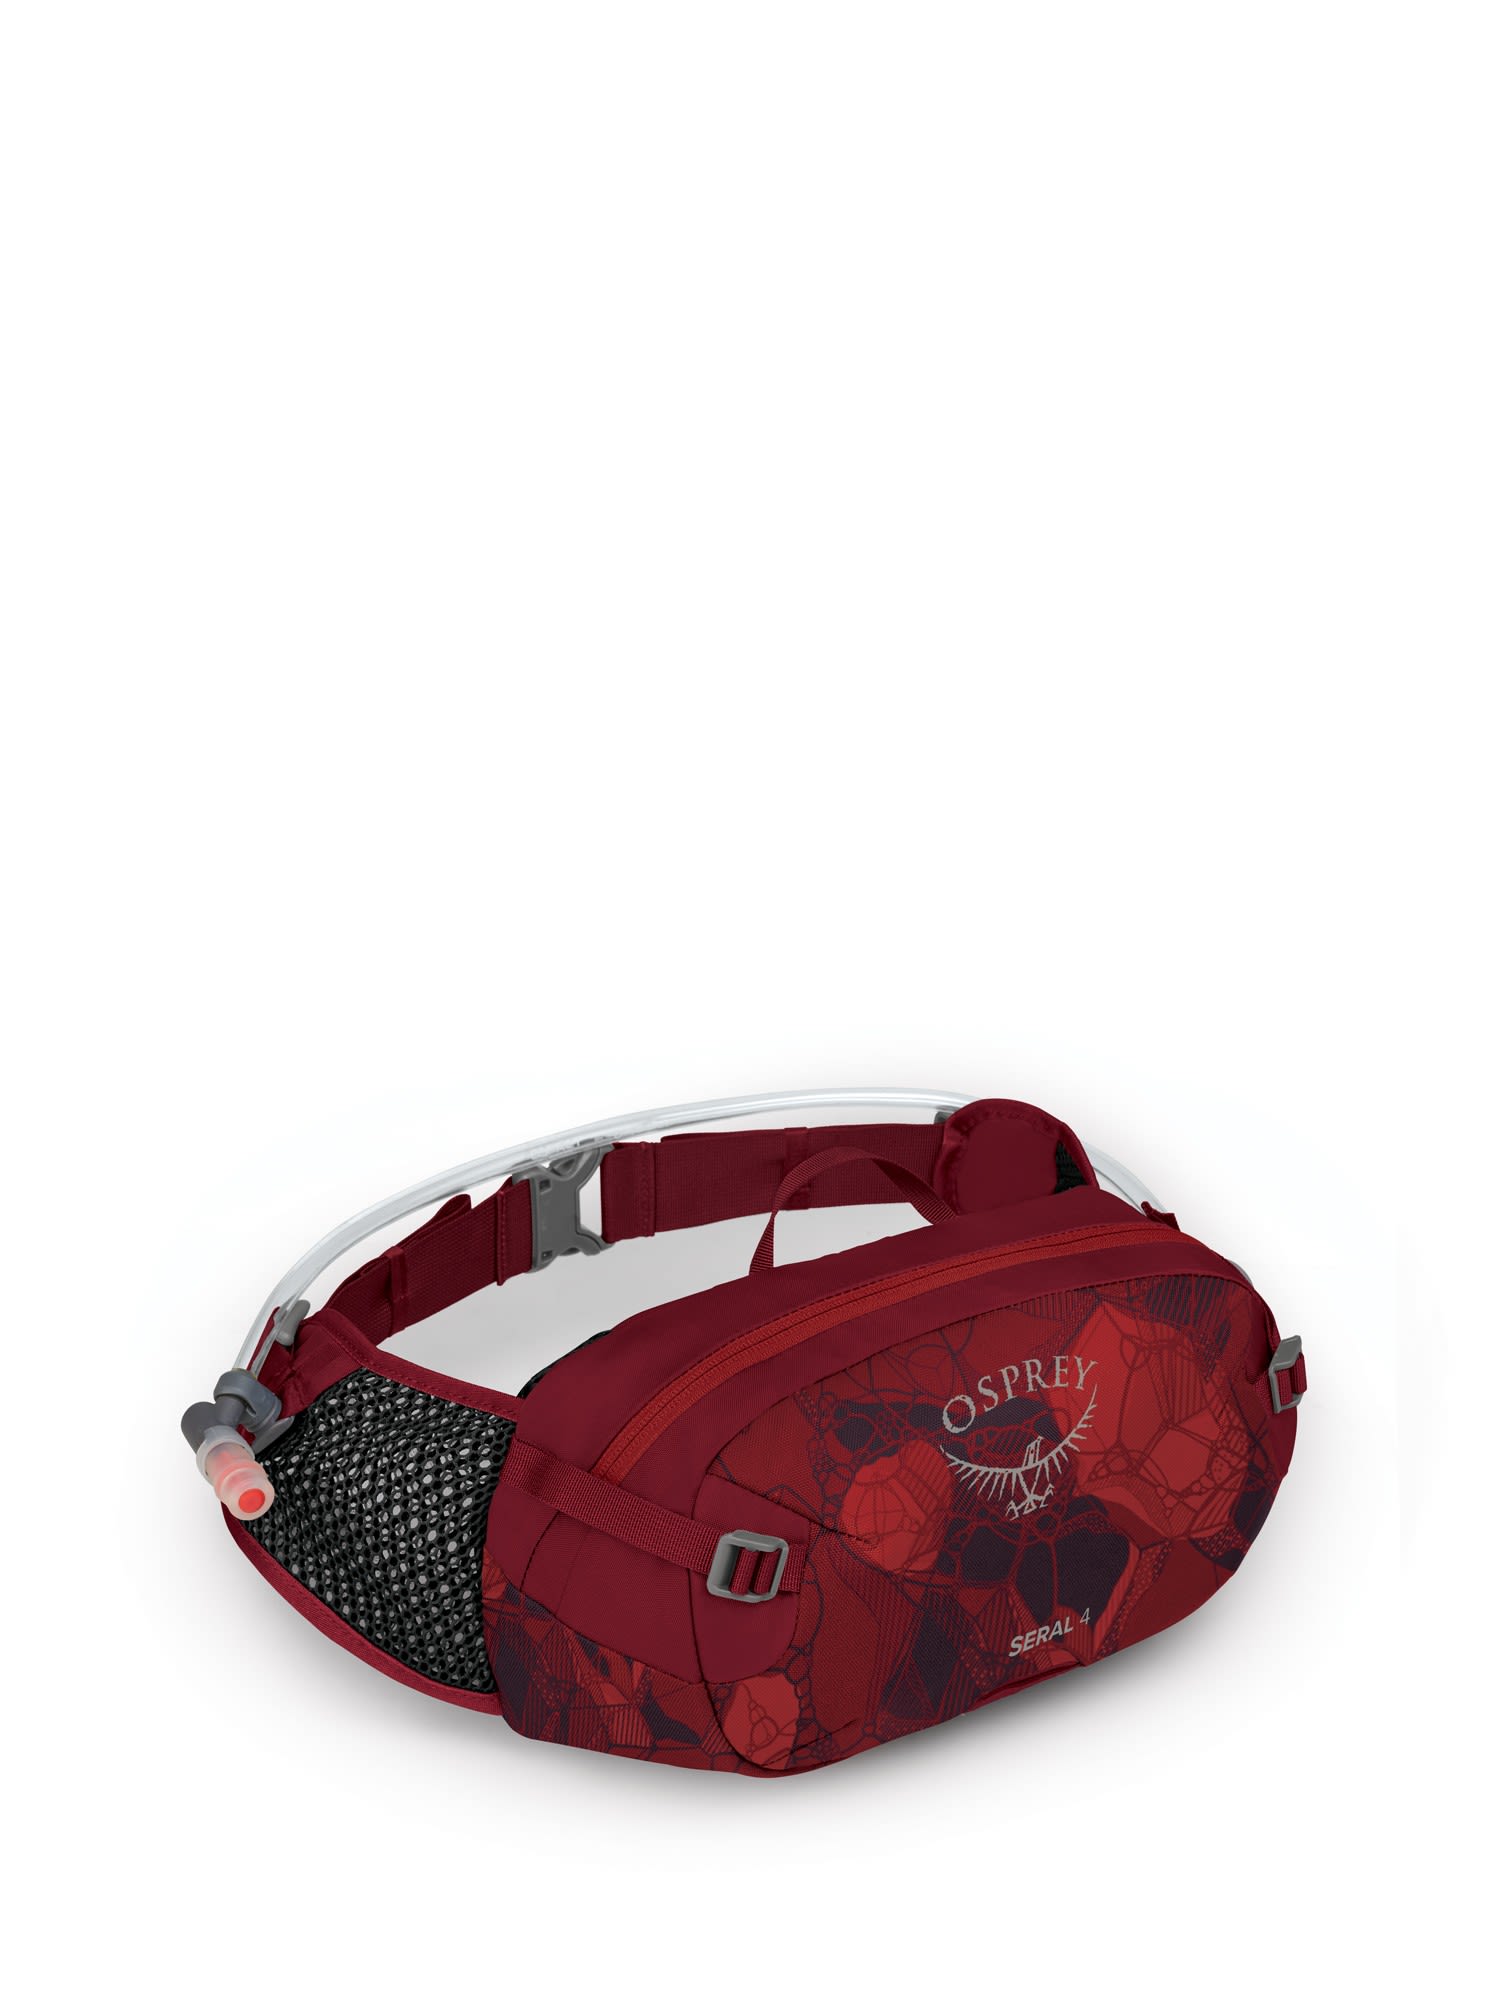 Osprey Leichte komfortable Fahrrad Hüfttasche  4l Claret Red